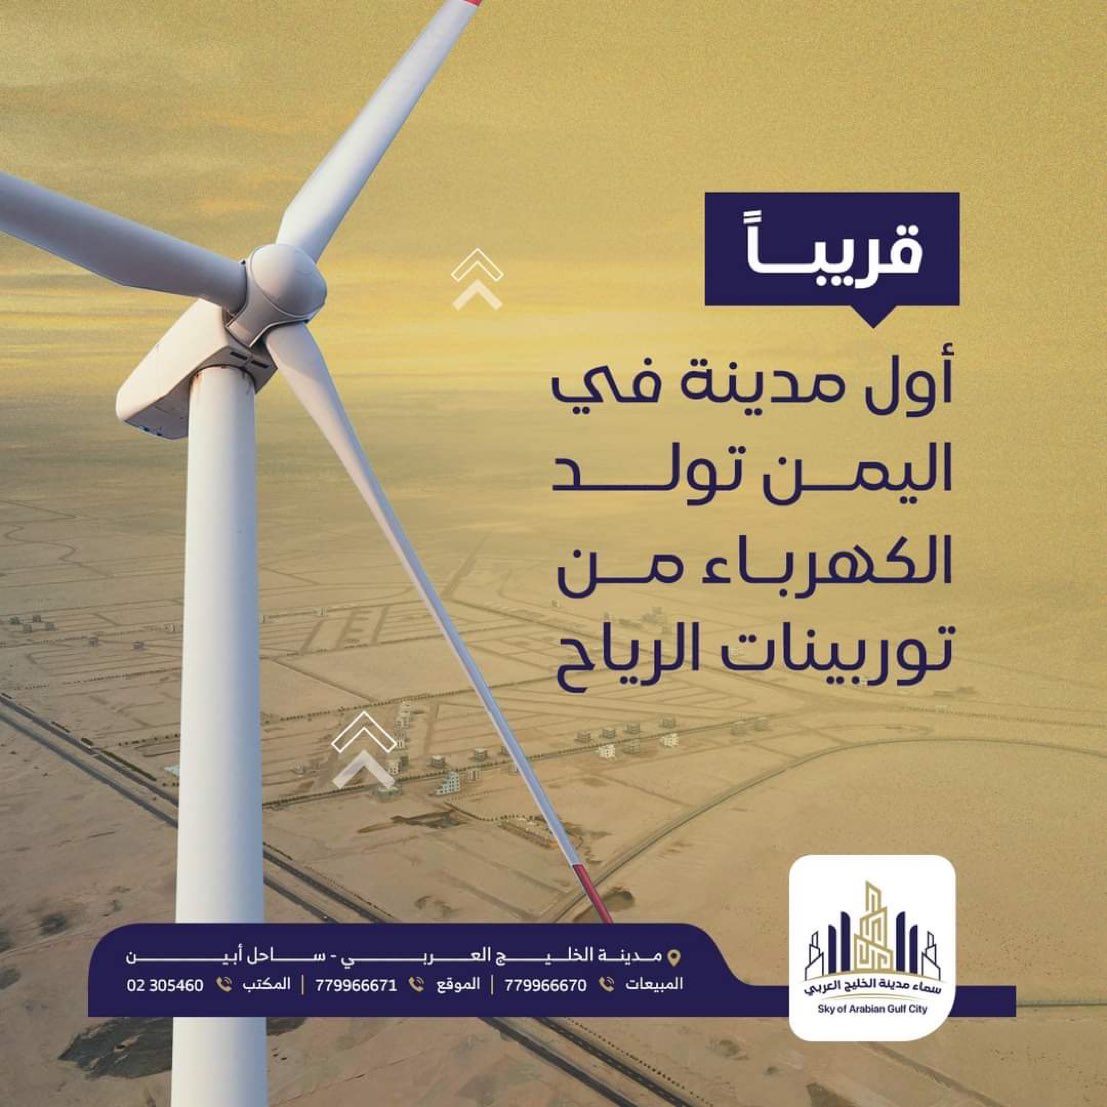 #قريبا |

أول مدينة في #الجنوب_العربي تولد الكهرباء من توربينات الرياح
مدينة الخليج العربي..

#اليمن 
#Yemen